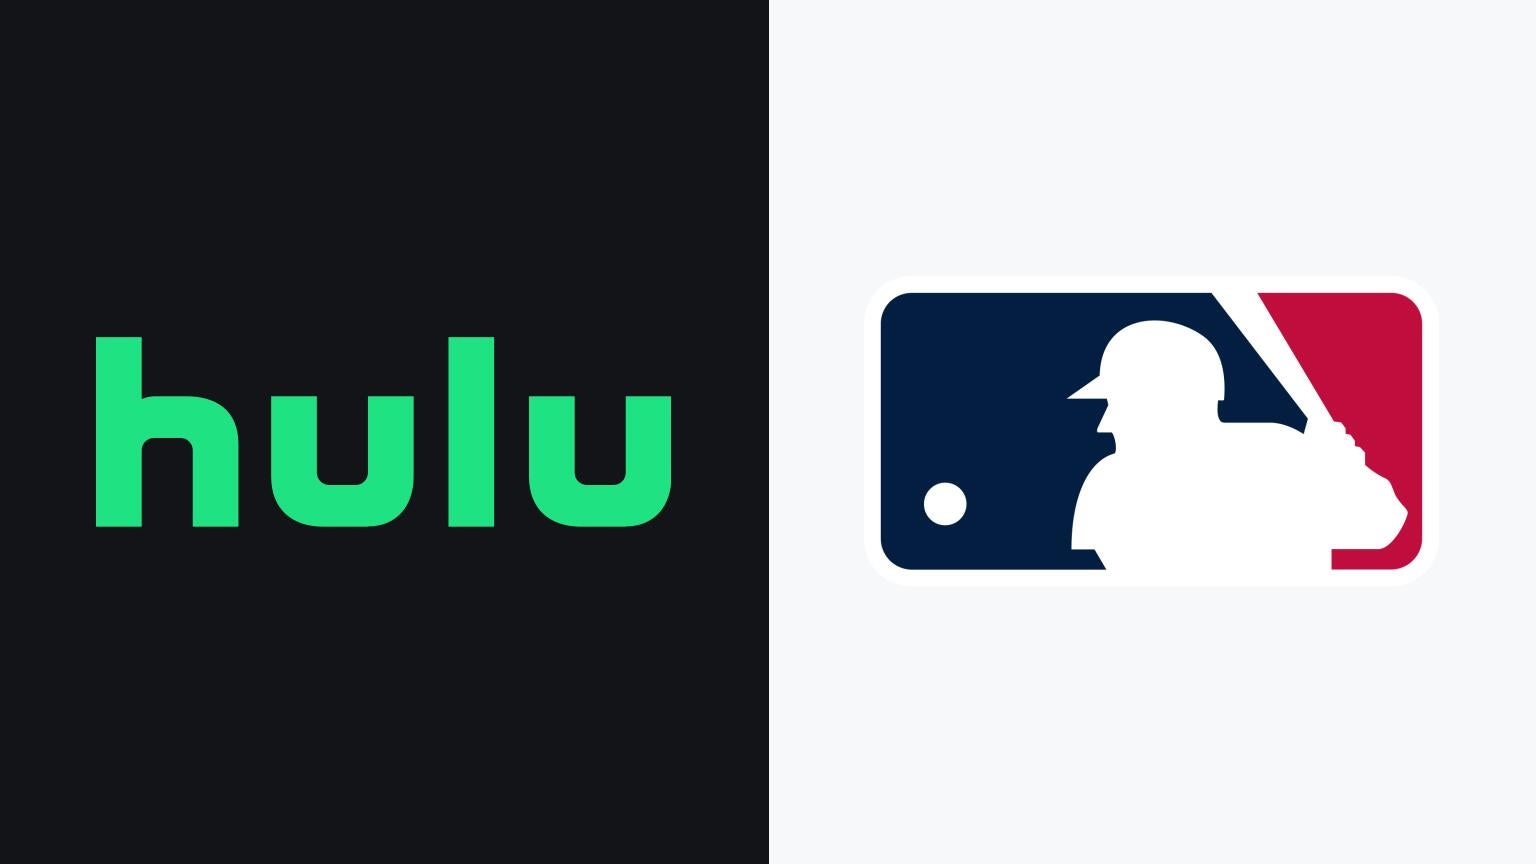 hulu and baseball